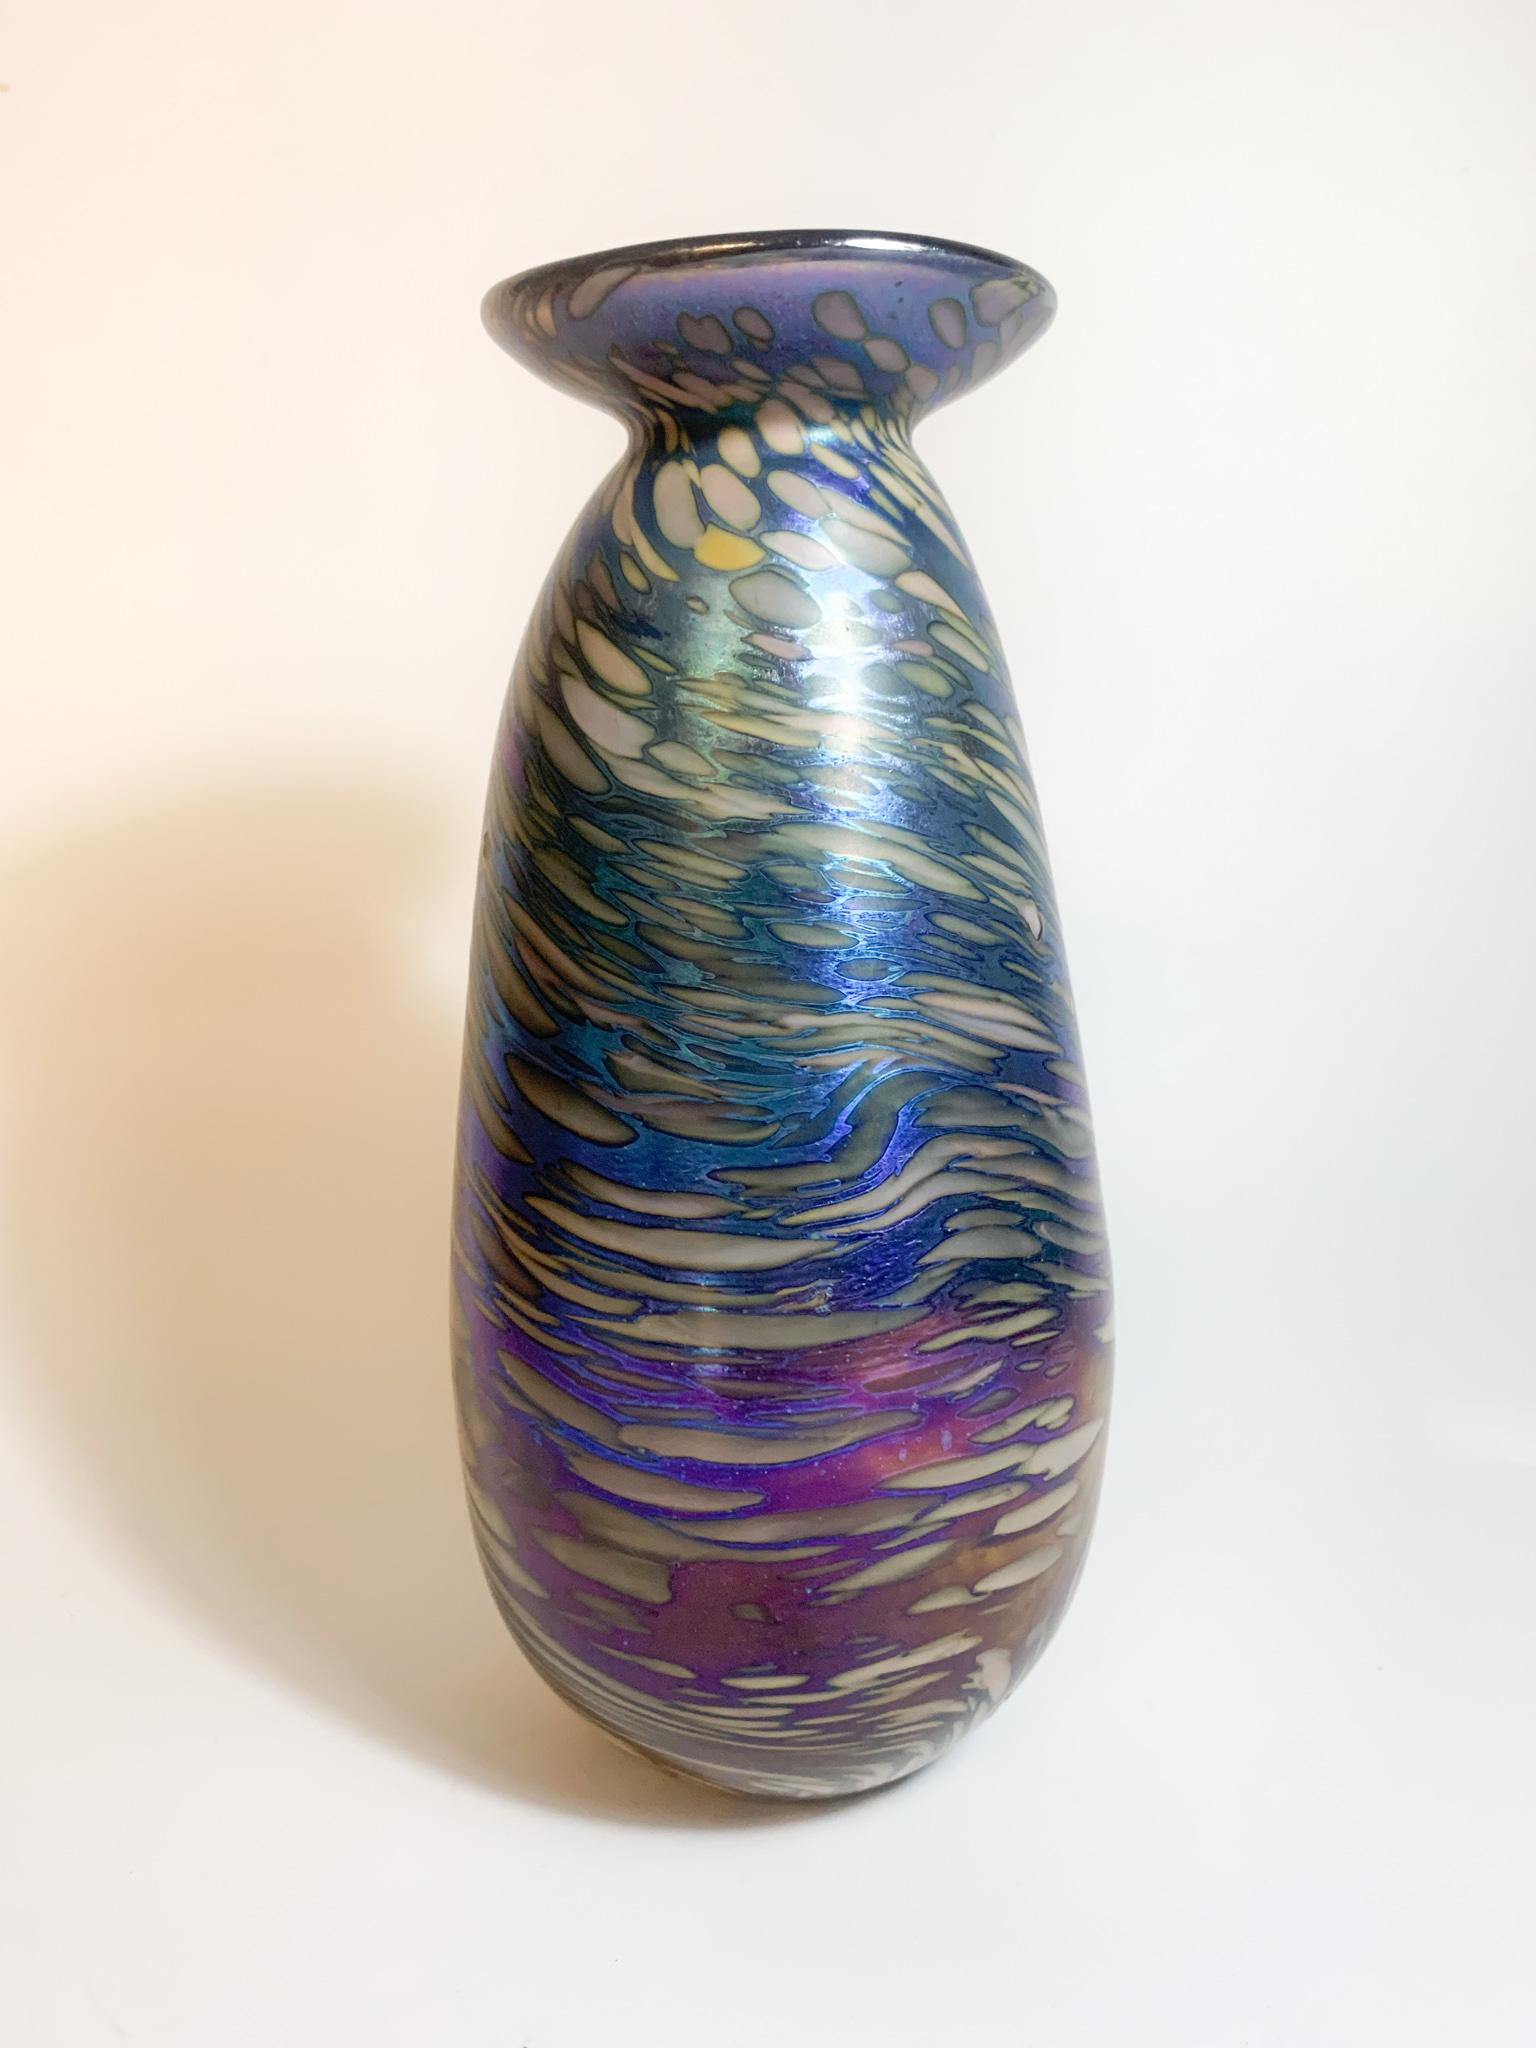 Vase aus mehrfarbig schillerndem Glas von Loetz, hergestellt in den 1940er Jahren

Ø cm 9 h cm 20

Die Produktion von Loetz-Glas begann mit Johan Loetz (1778-1848) im 18. Jahrhundert durch die Übernahme der Glashütte Klostermühle.

In der zweiten